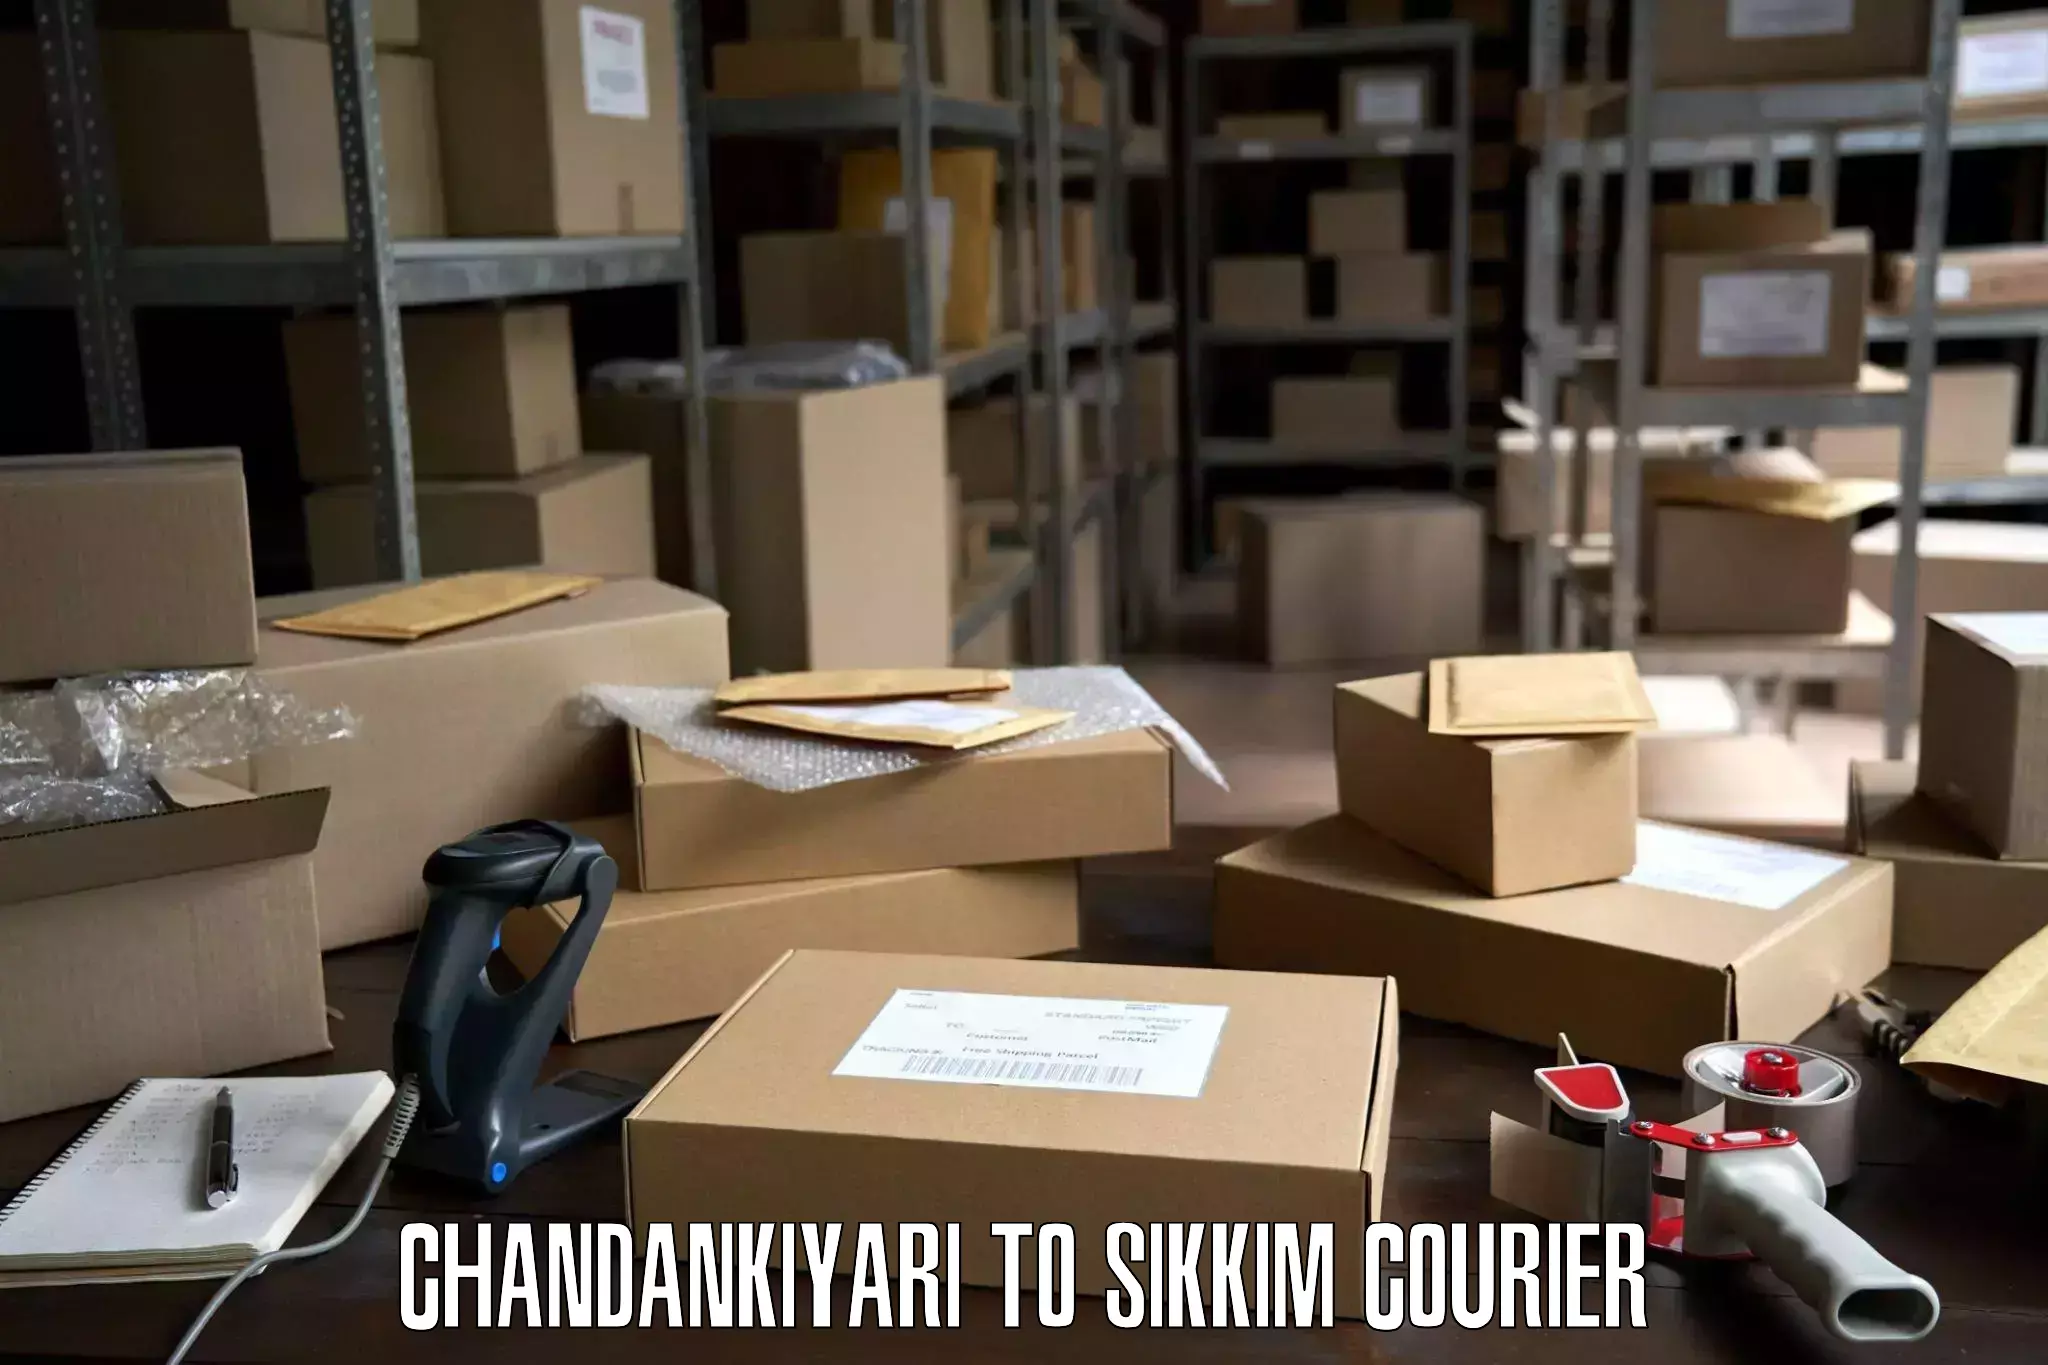 Professional moving company Chandankiyari to South Sikkim